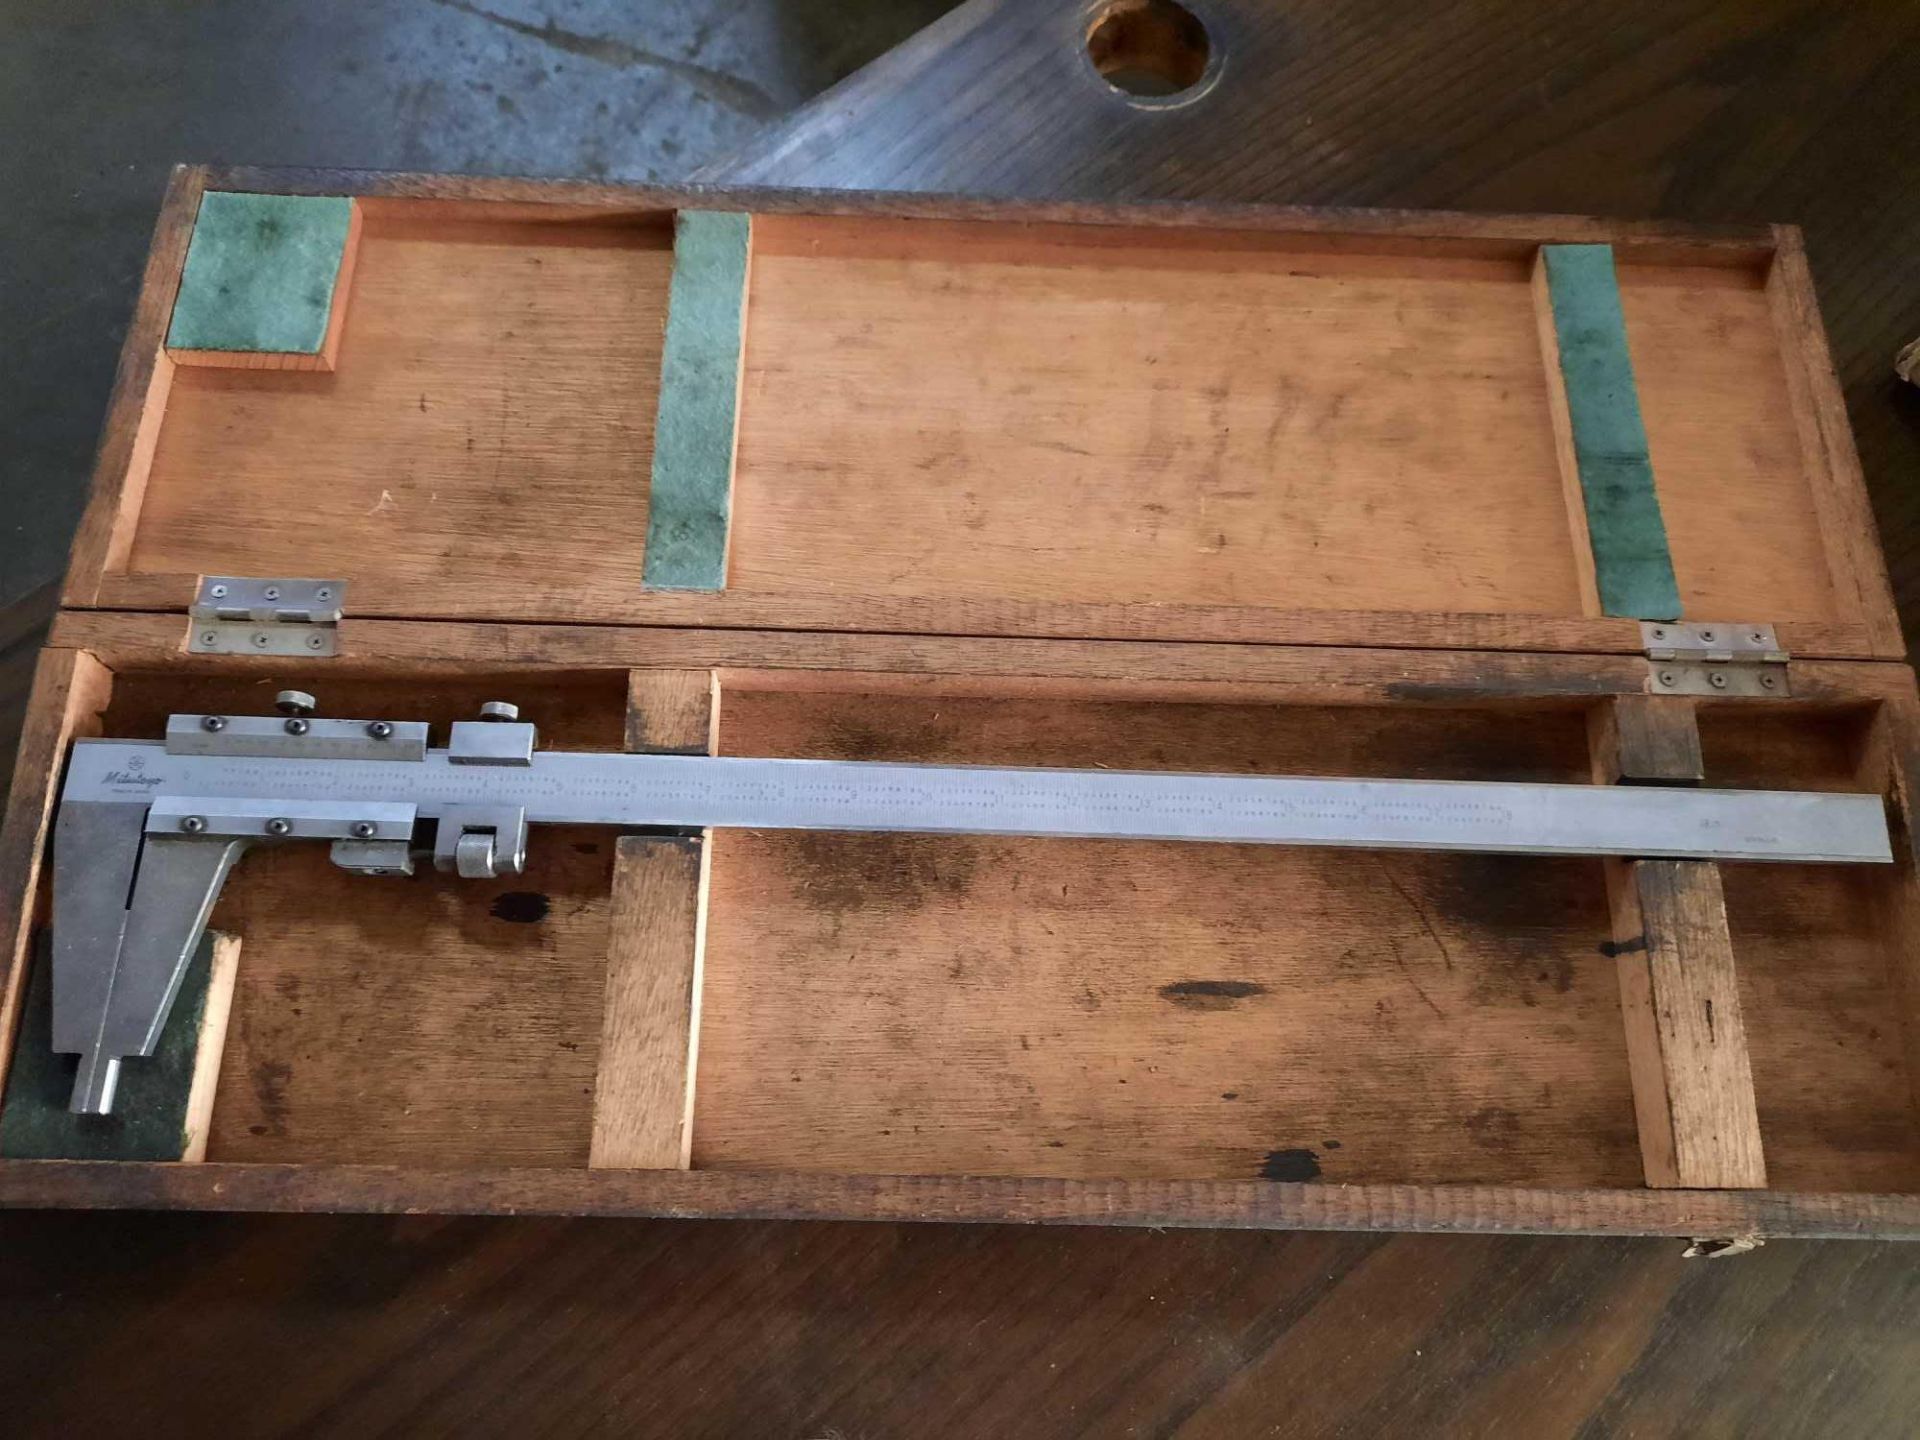 Mitutoyo 18 inch vernier caliper in wood box